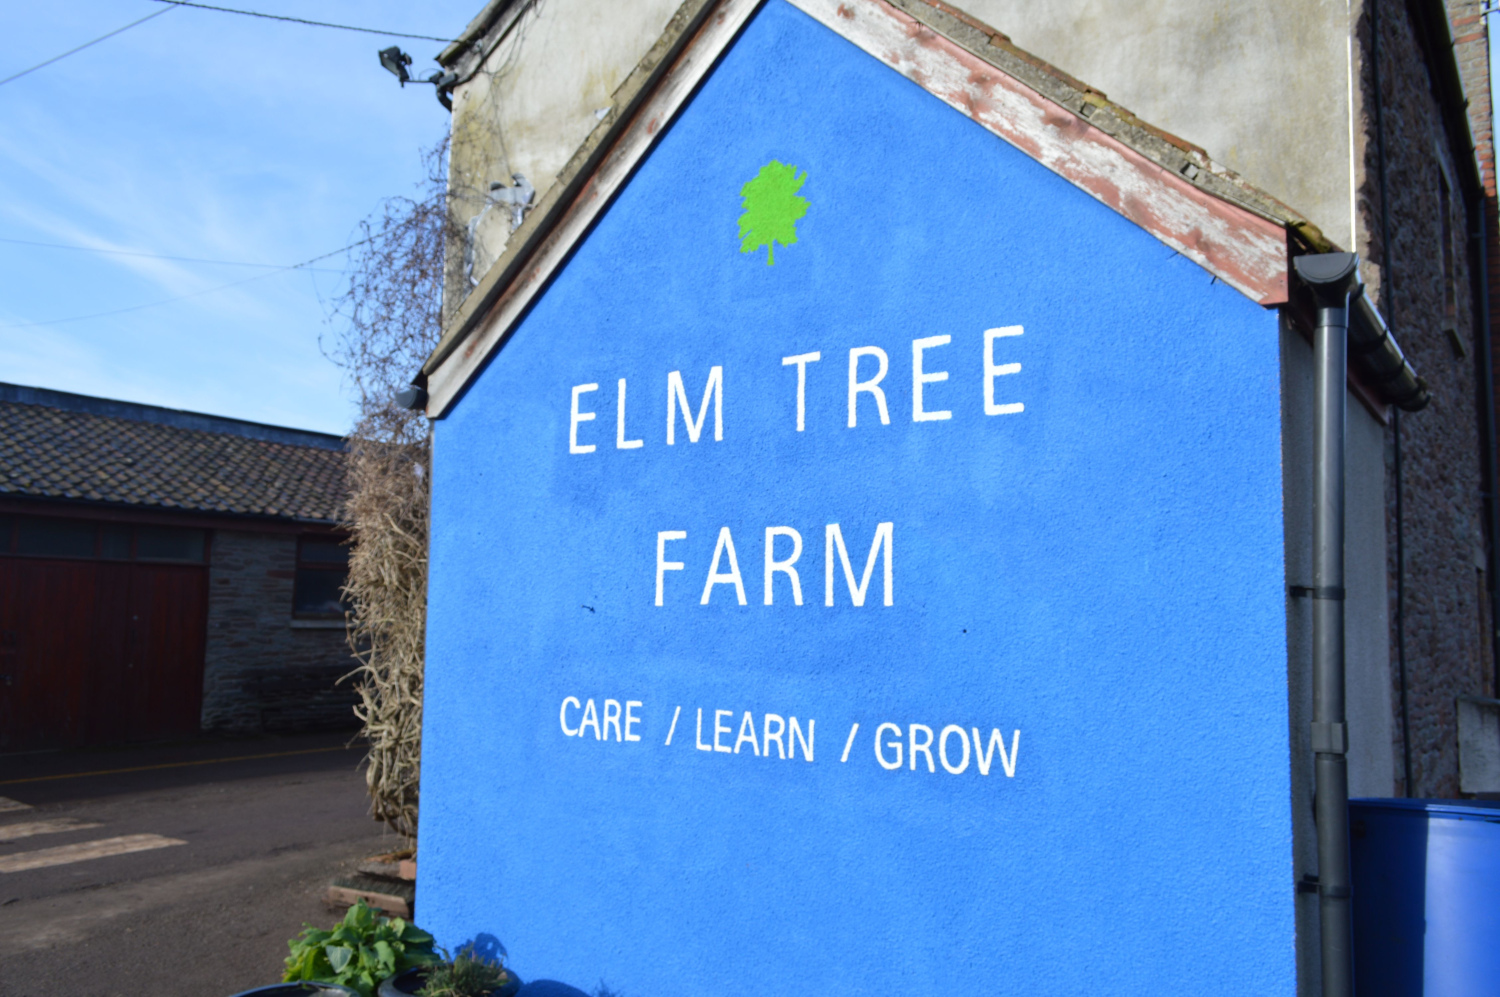 Care, learn, grow - at Elm Tree Farm